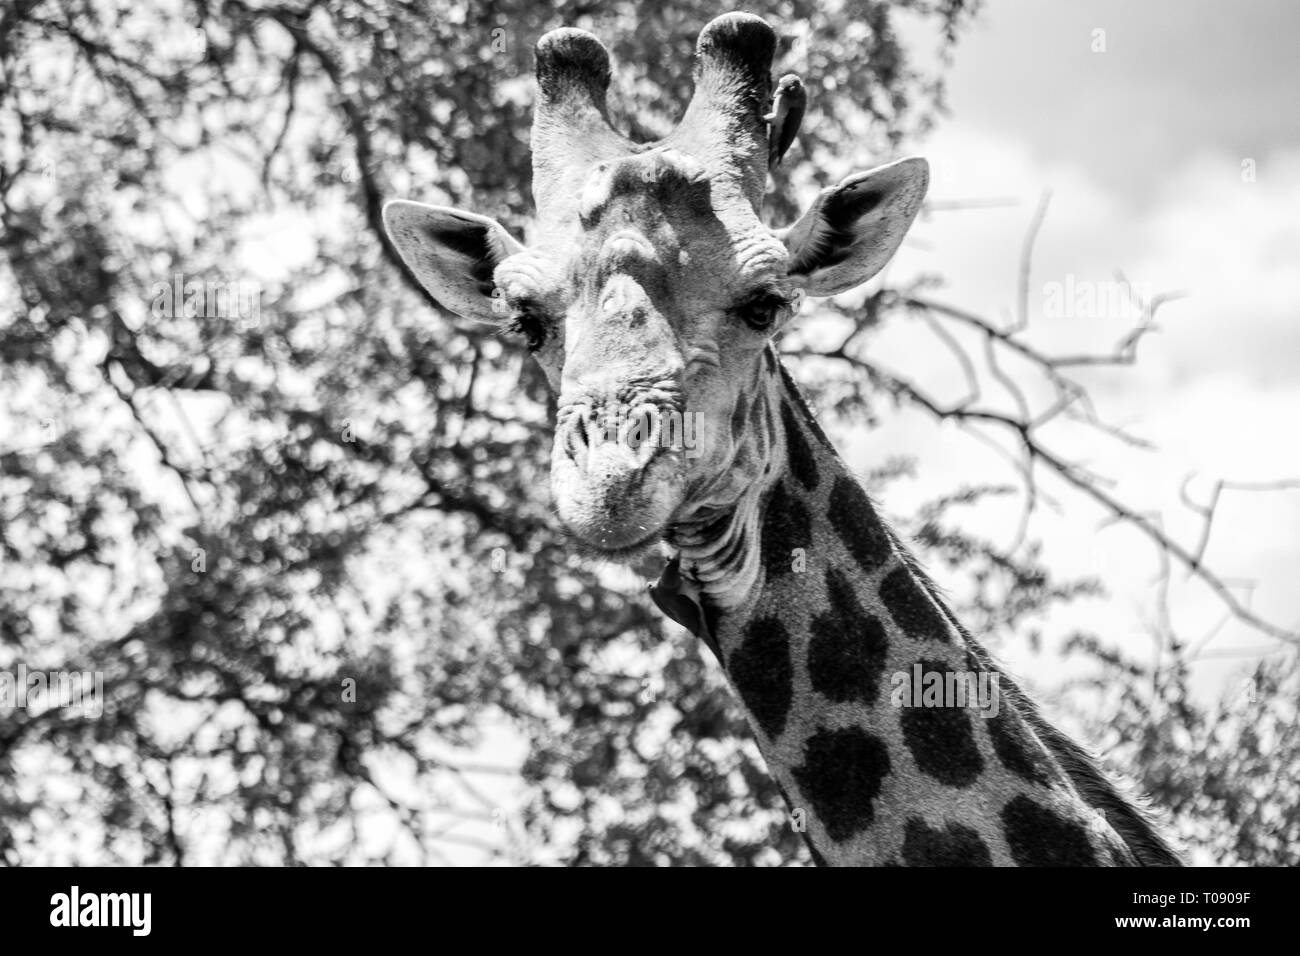 Cute Giraffe walking autour en Afrique du Sud Banque D'Images